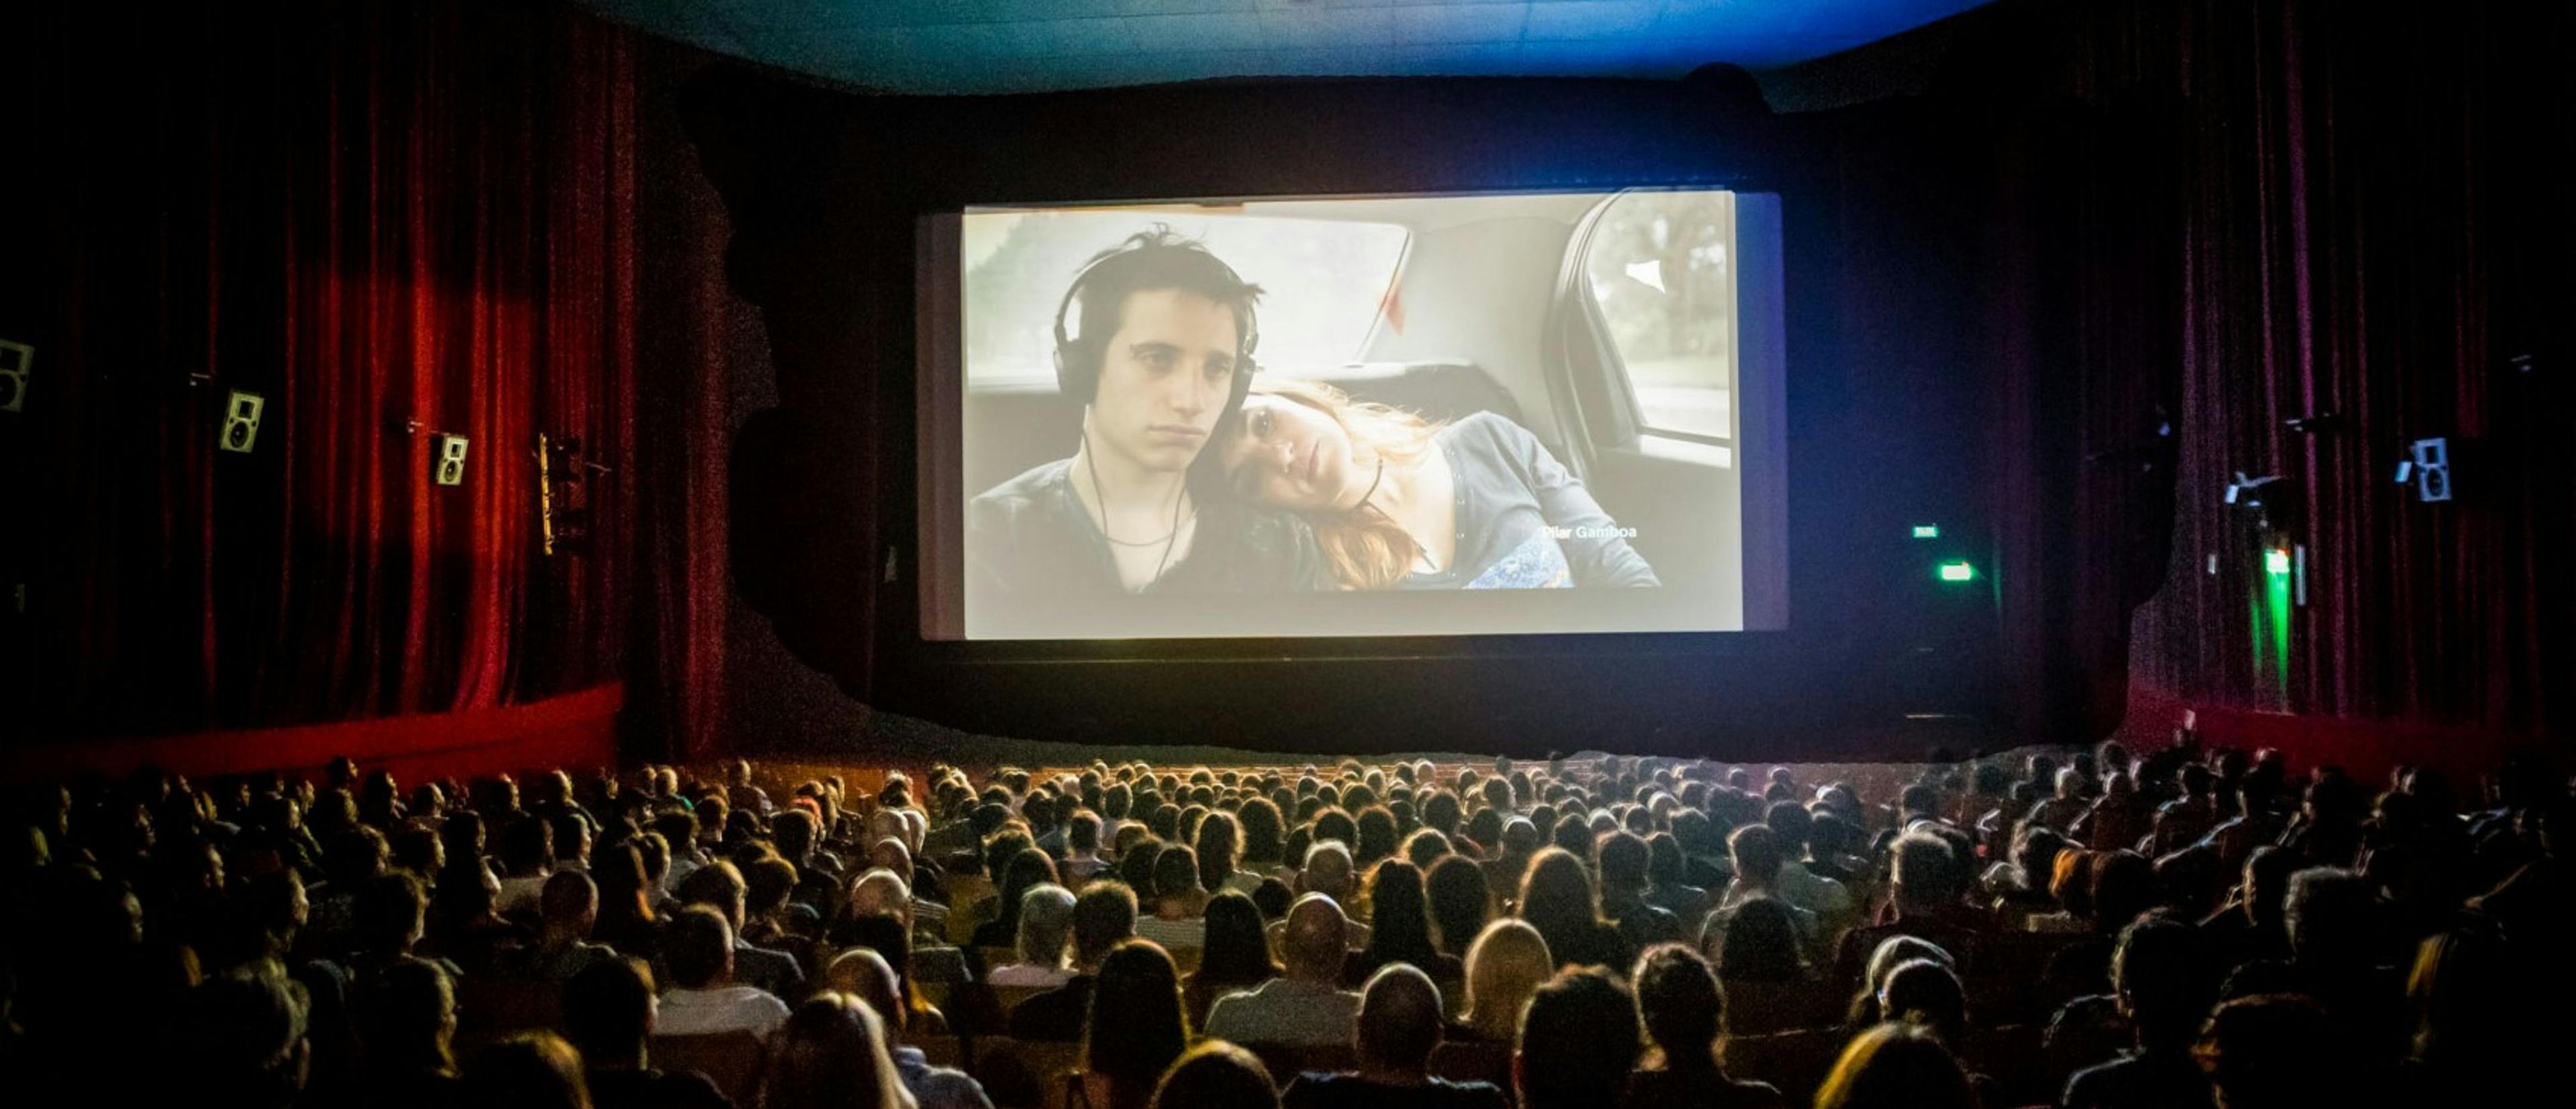 Cine de Buenos Aires durante la inauguración del Bafici